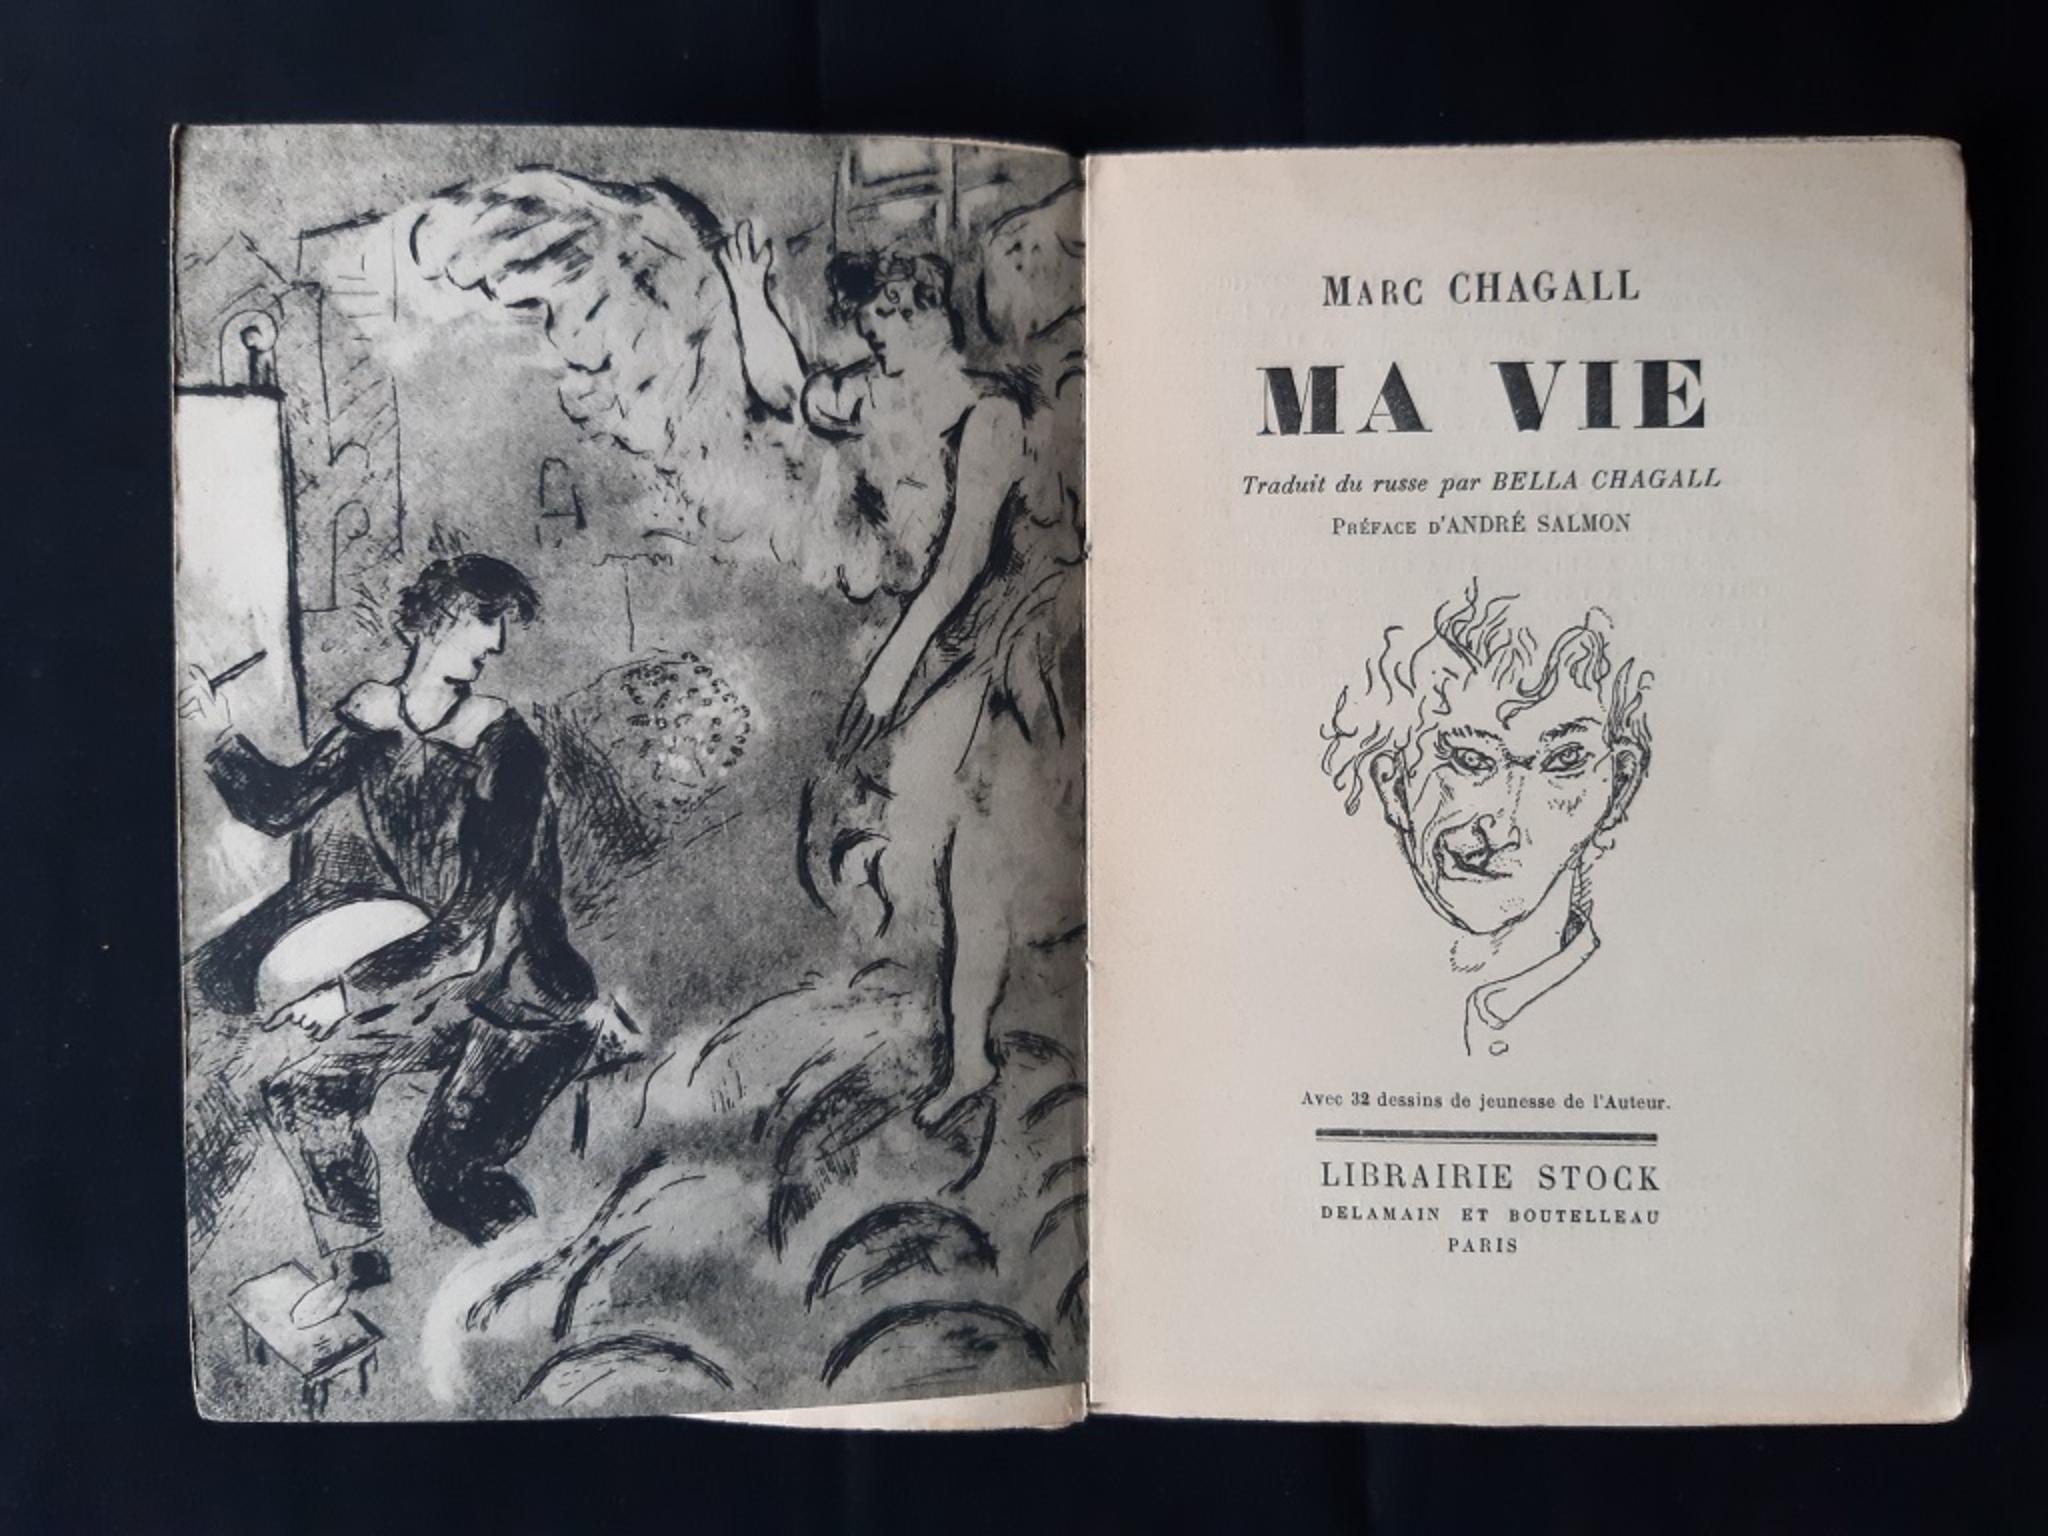 Erste Ausgabe von Chagalls Autobiografie.
Limitierte Auflage von 1650 Exemplaren.
Format: In-8°
Seiten: 253
32 Reproduktionen von Zeichnungen aus Chagalls Jugendzeit.
Gute Bedingungen.